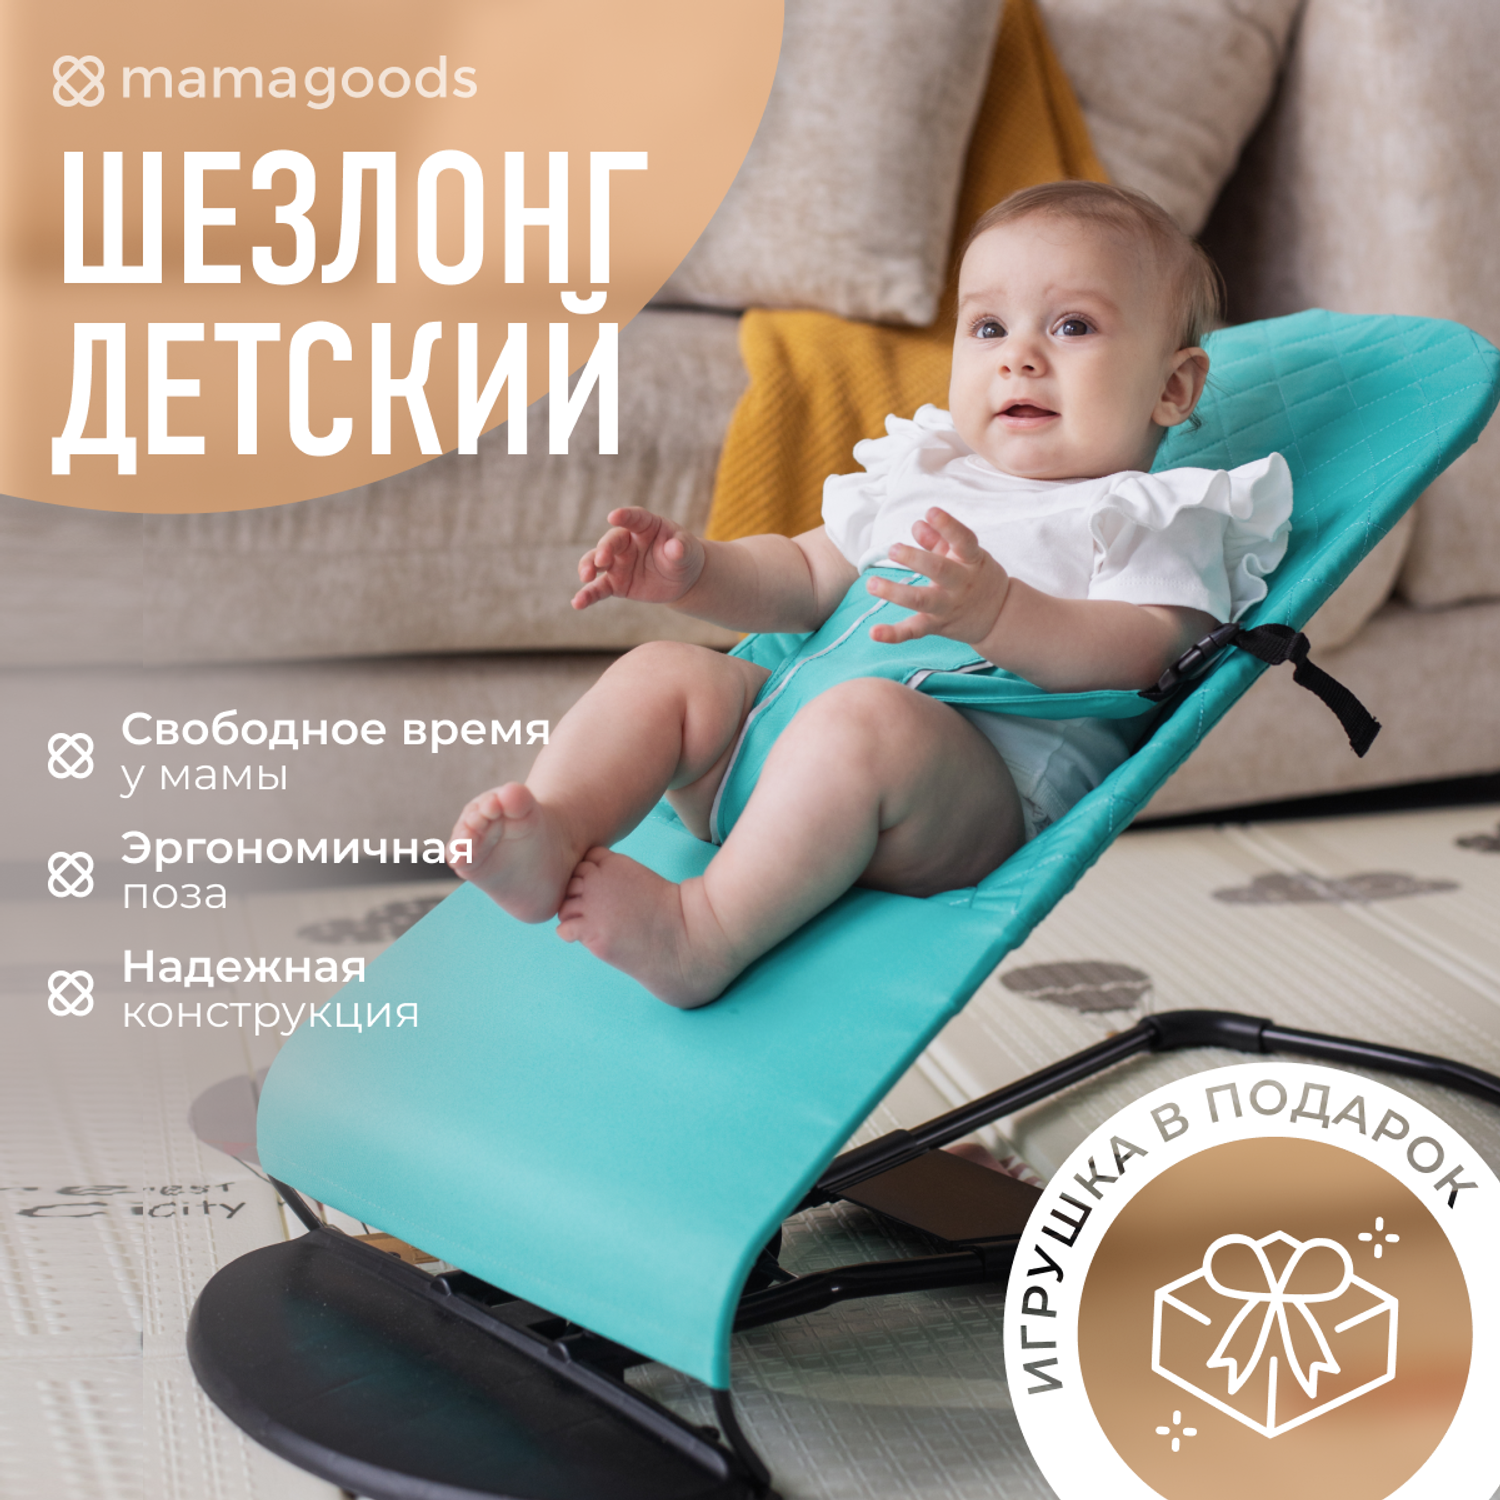 Детский складной шезлонг Mamagoods для новорожденных от 0 кресло качалка для малышей B3 - фото 2